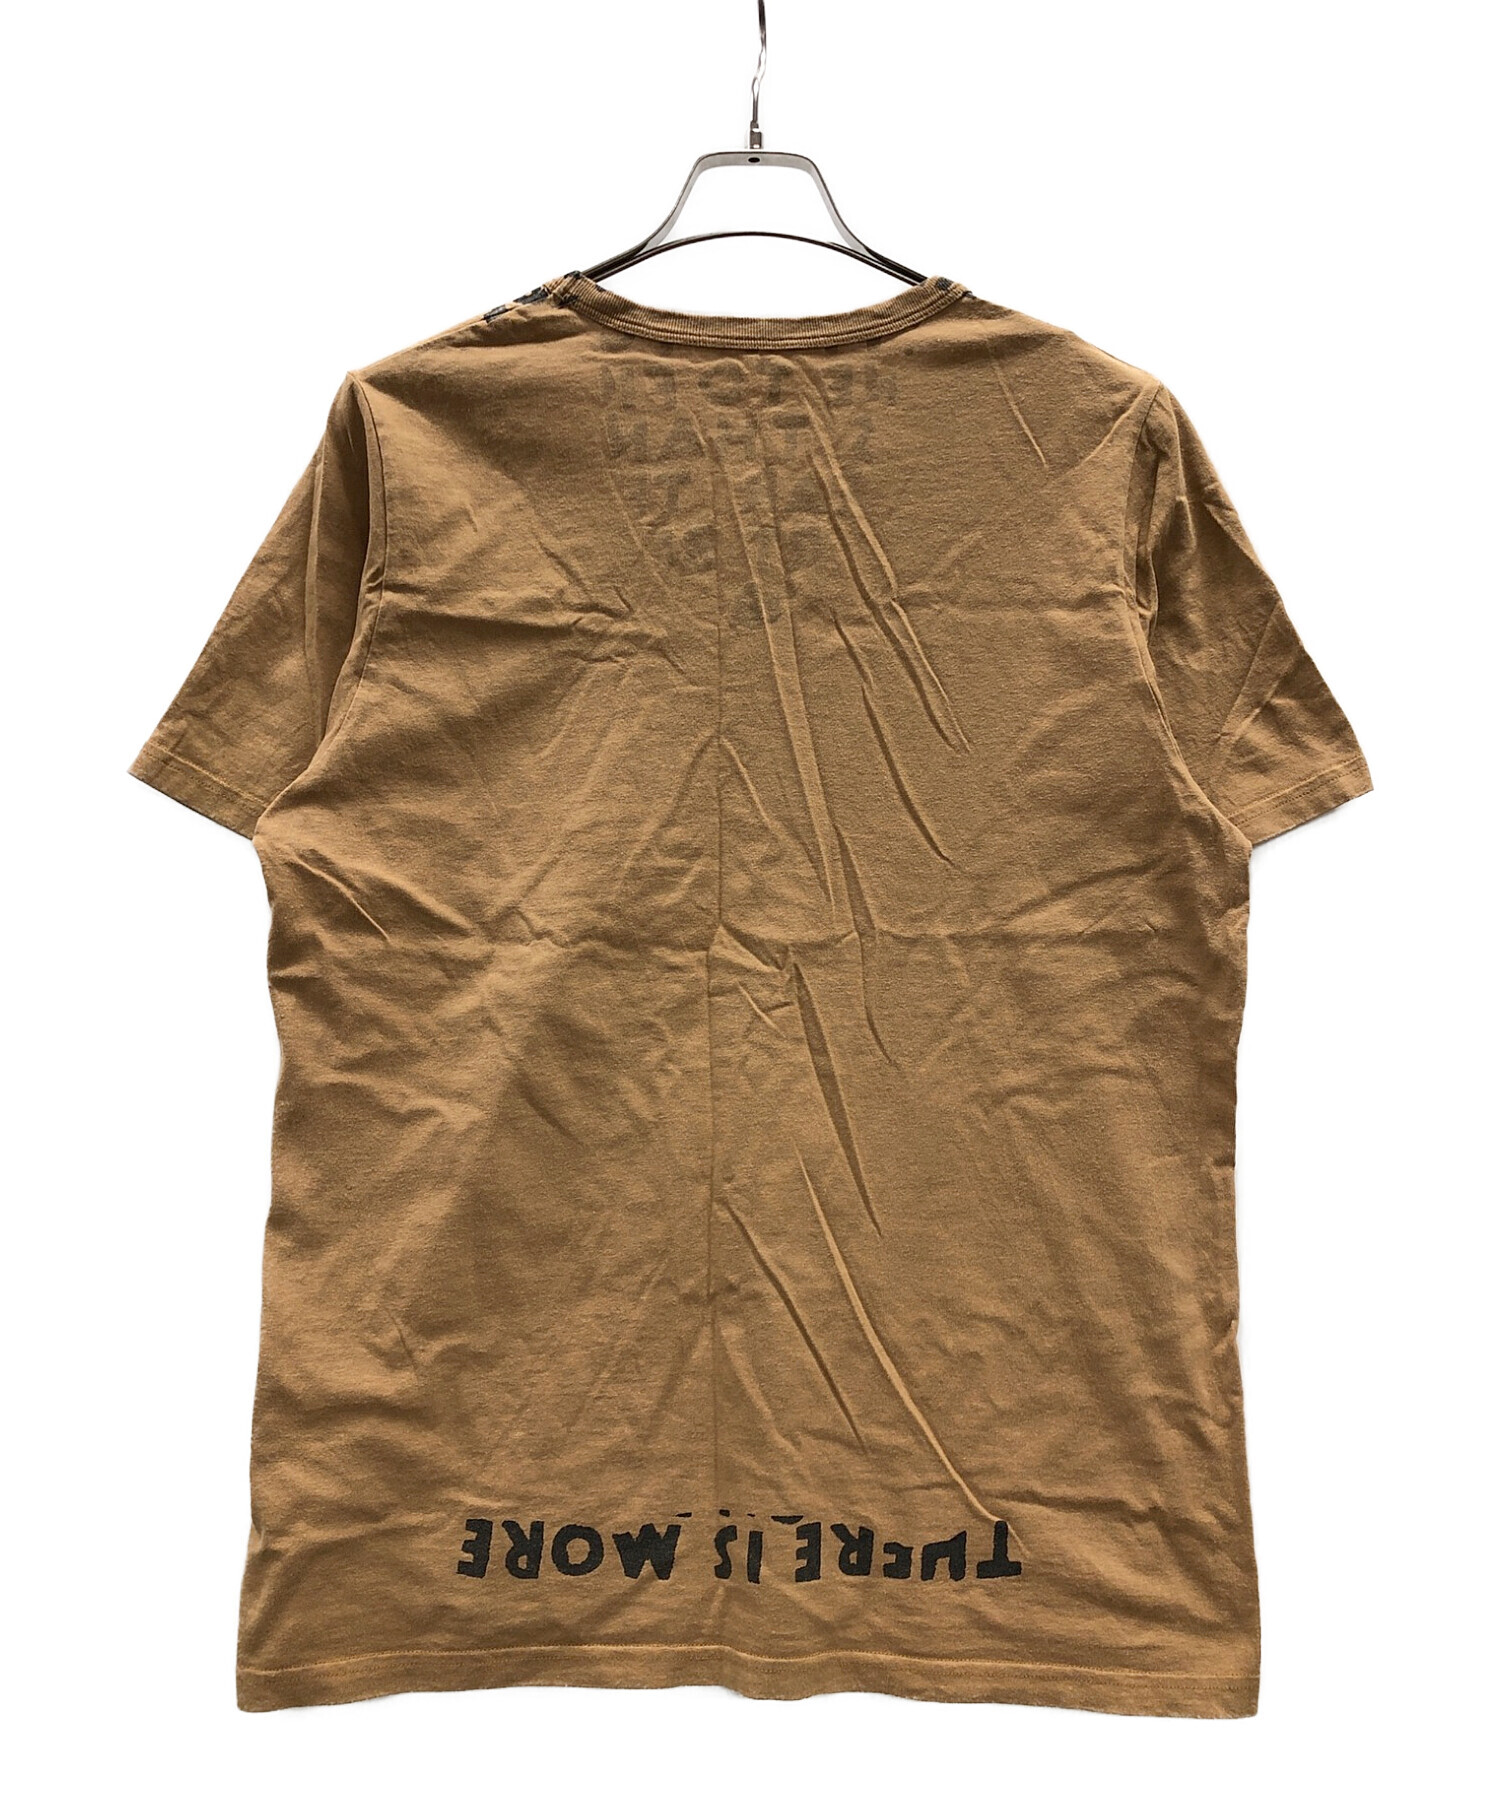 こちらはTシャツバージョンですMartin Margiela 初期 01SS サークル カットソー